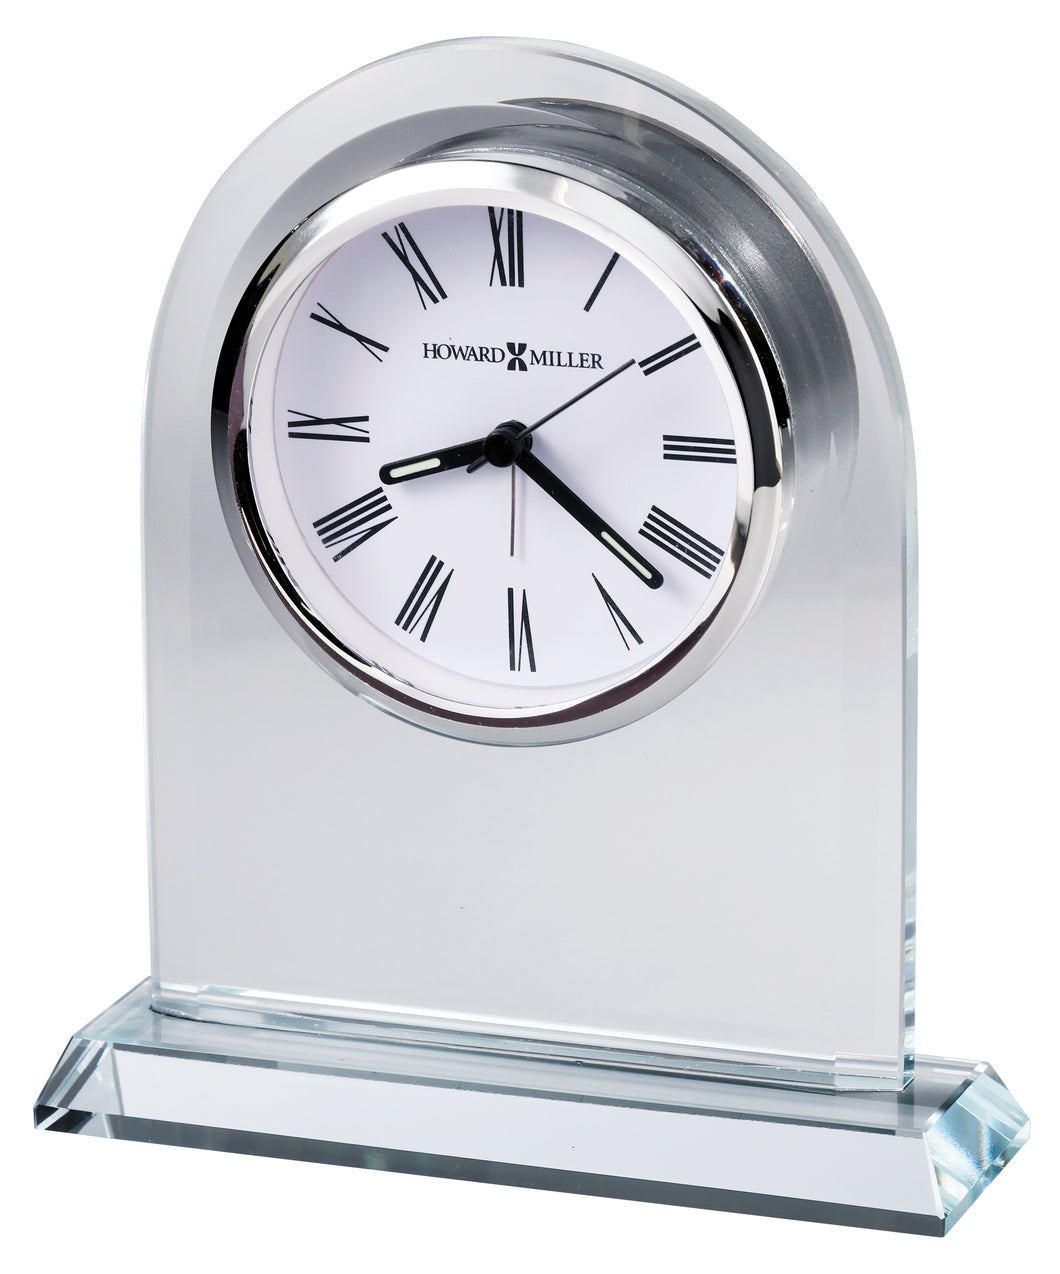 Vesta Tabletop Alarm Clock